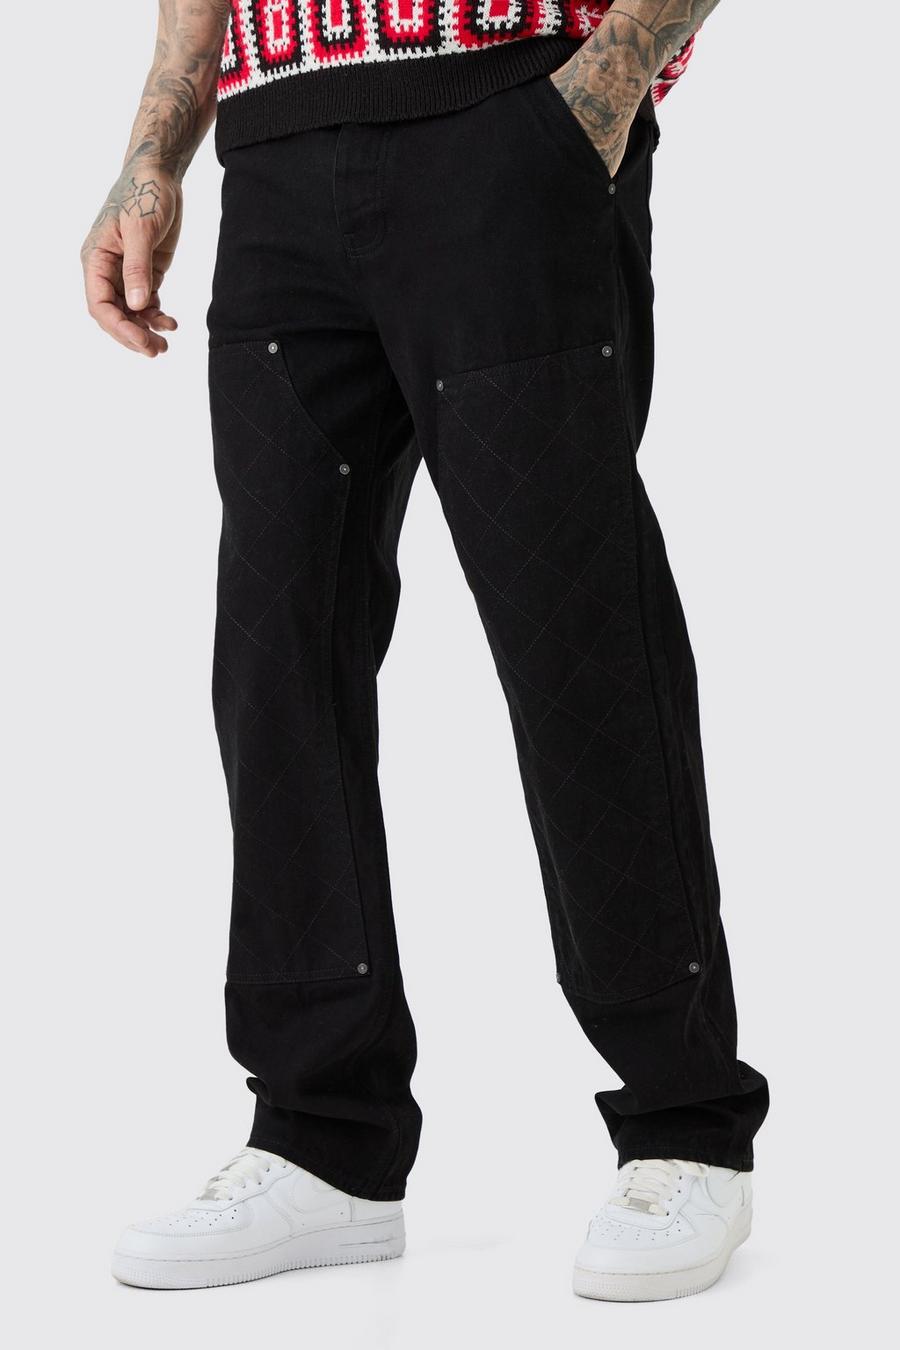 Jeans Tall rilassati in denim rigido con cuciture e dettagli stile Carpenter, True black